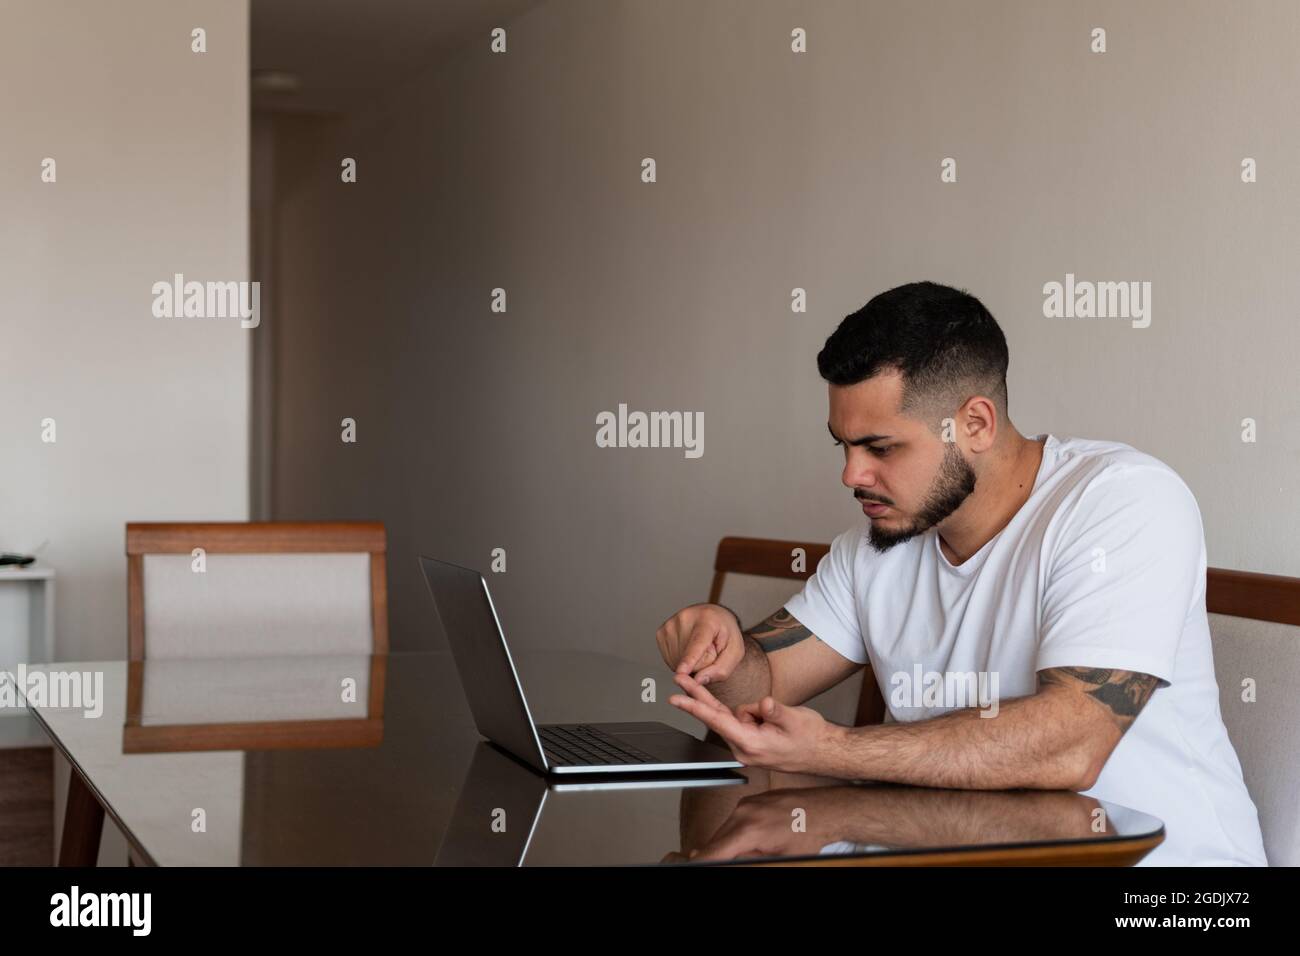 Jeune Latino homme avec des tatouages comptant sur ses doigts devant un ordinateur portable avec un visage sérieux Banque D'Images